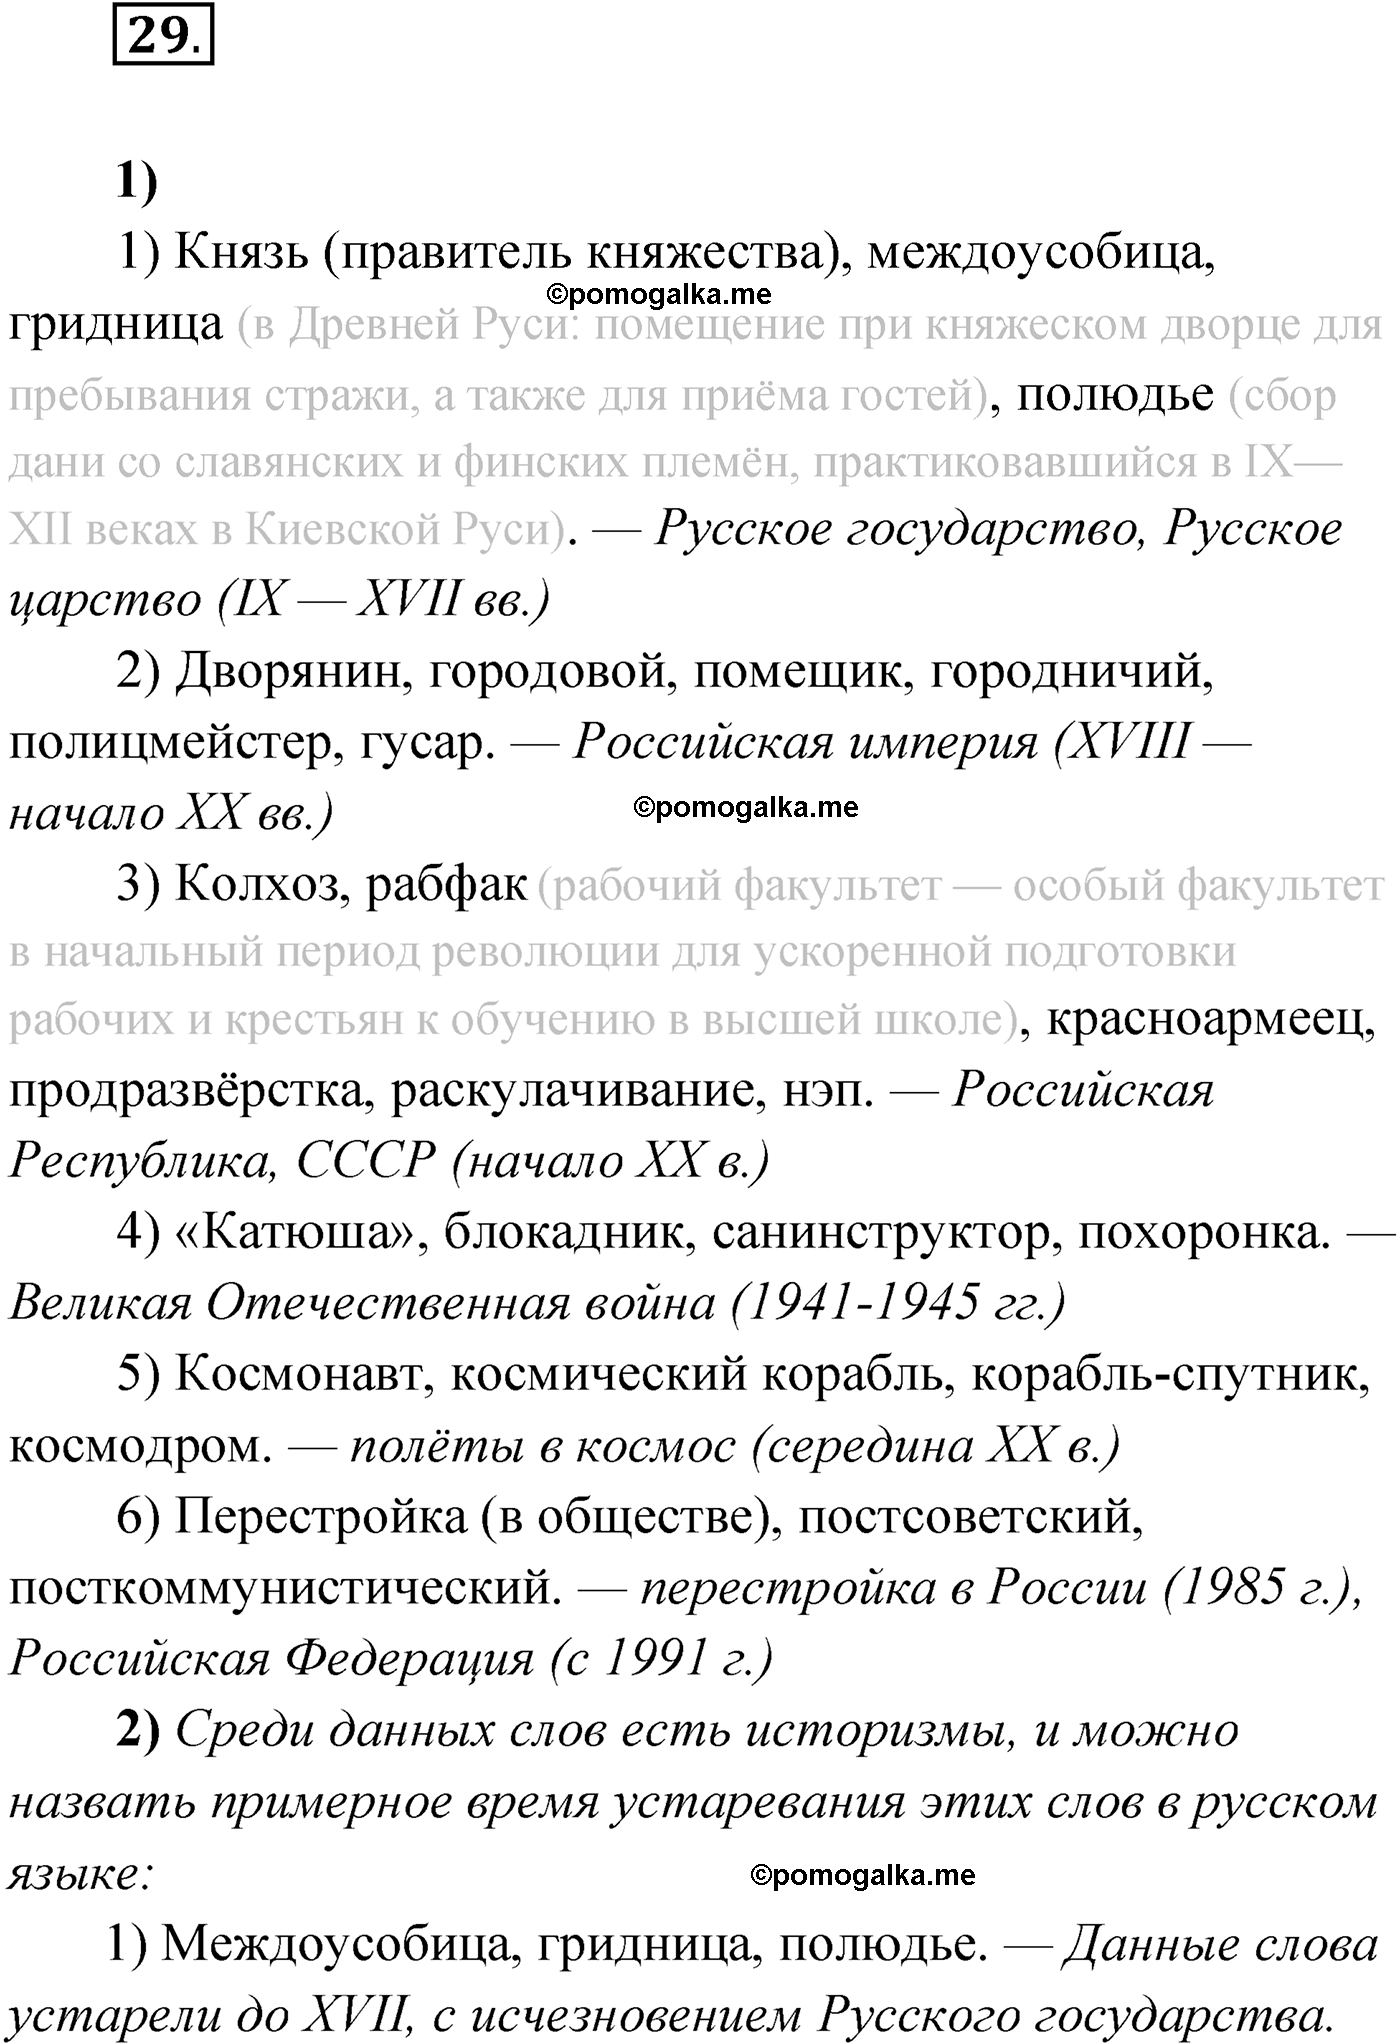 страница 26 упражнение 29 русский язык 9 класс Александрова 2022